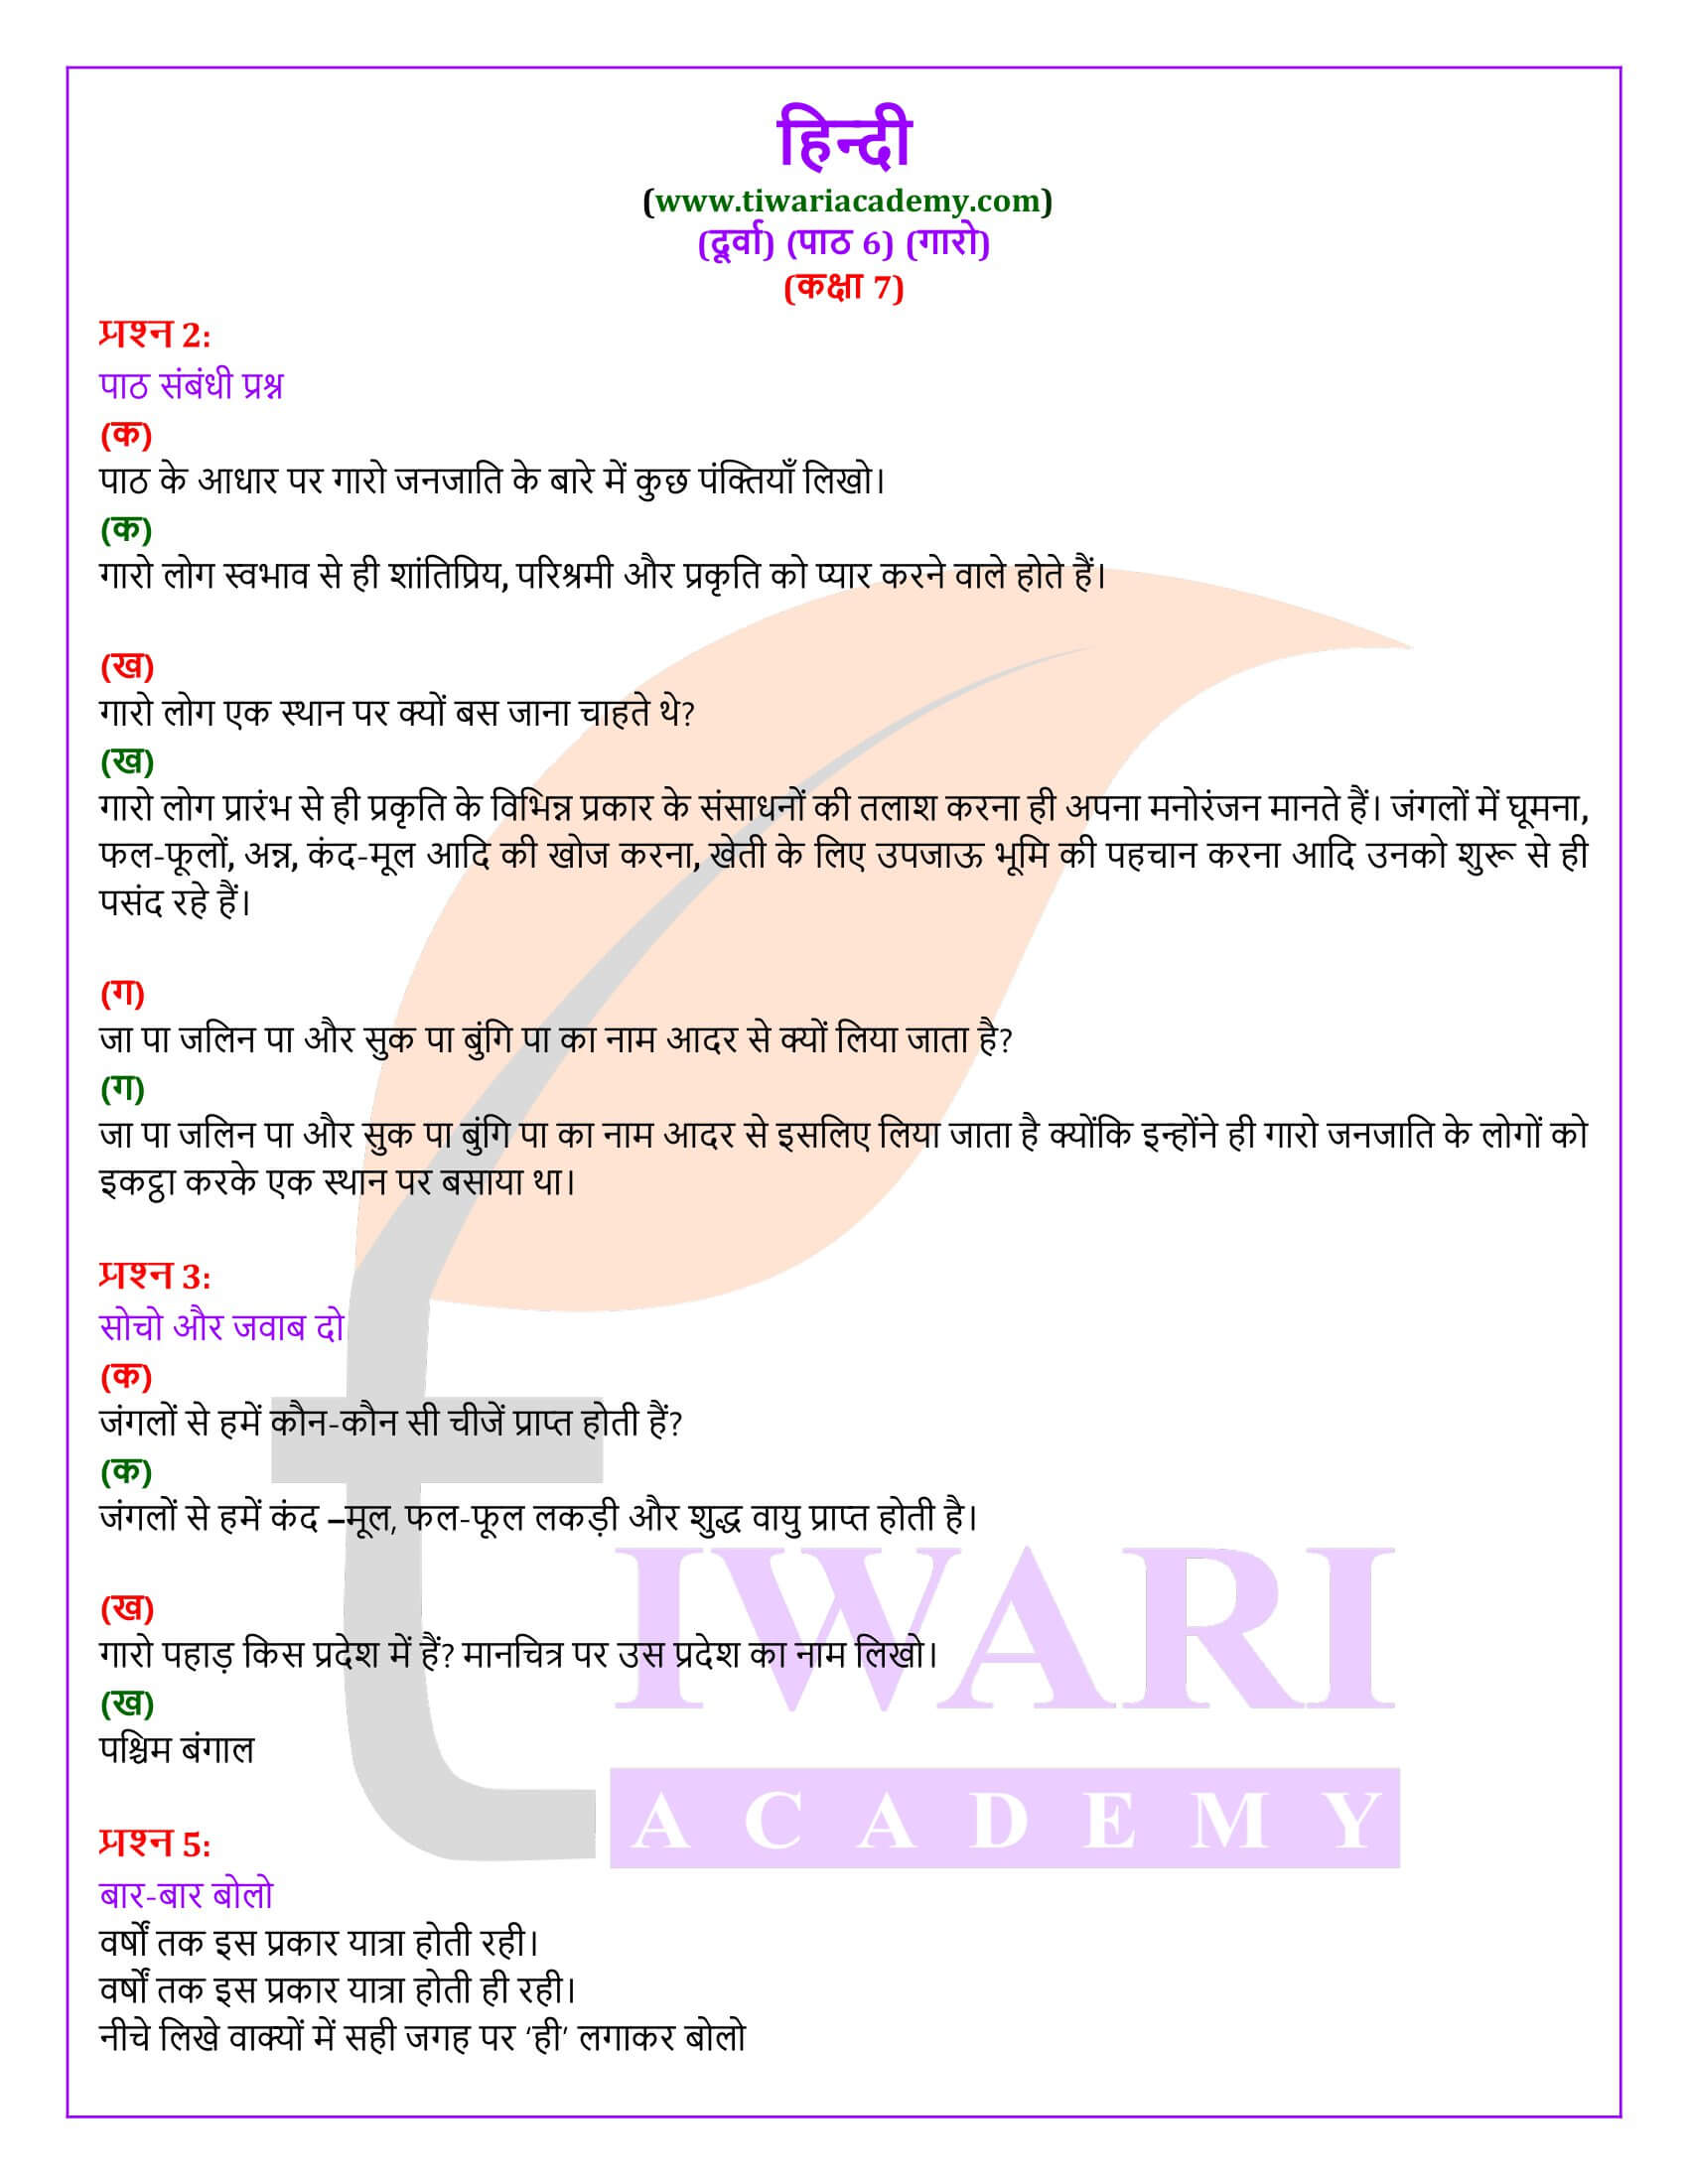 कक्षा 7 हिंदी दूर्वा अध्याय 6 गारो के प्रश्न उत्तर